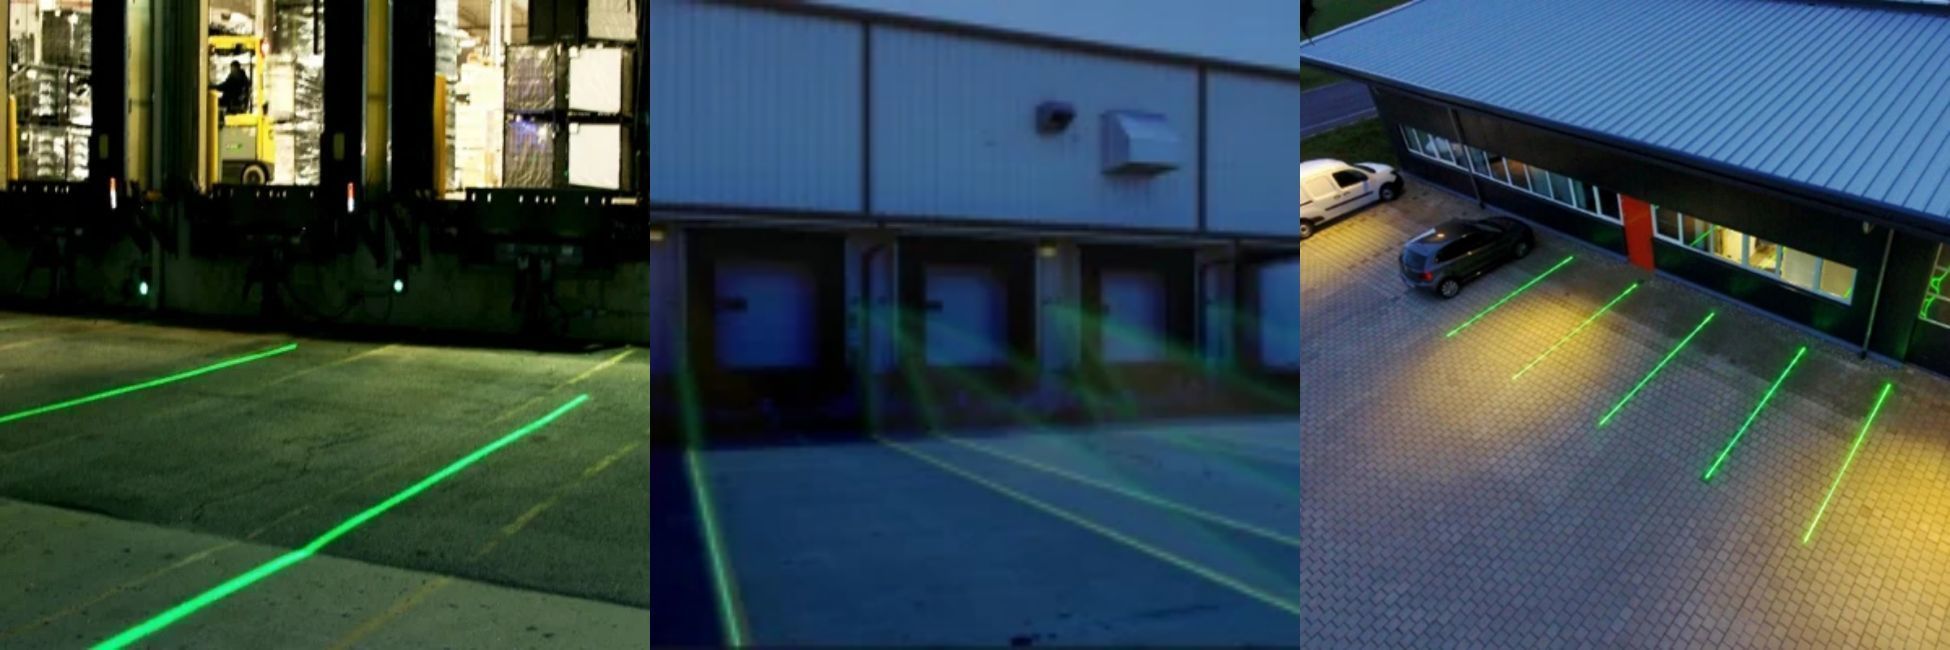 DIY Laser Virtual Floor Marker - EDN Asia